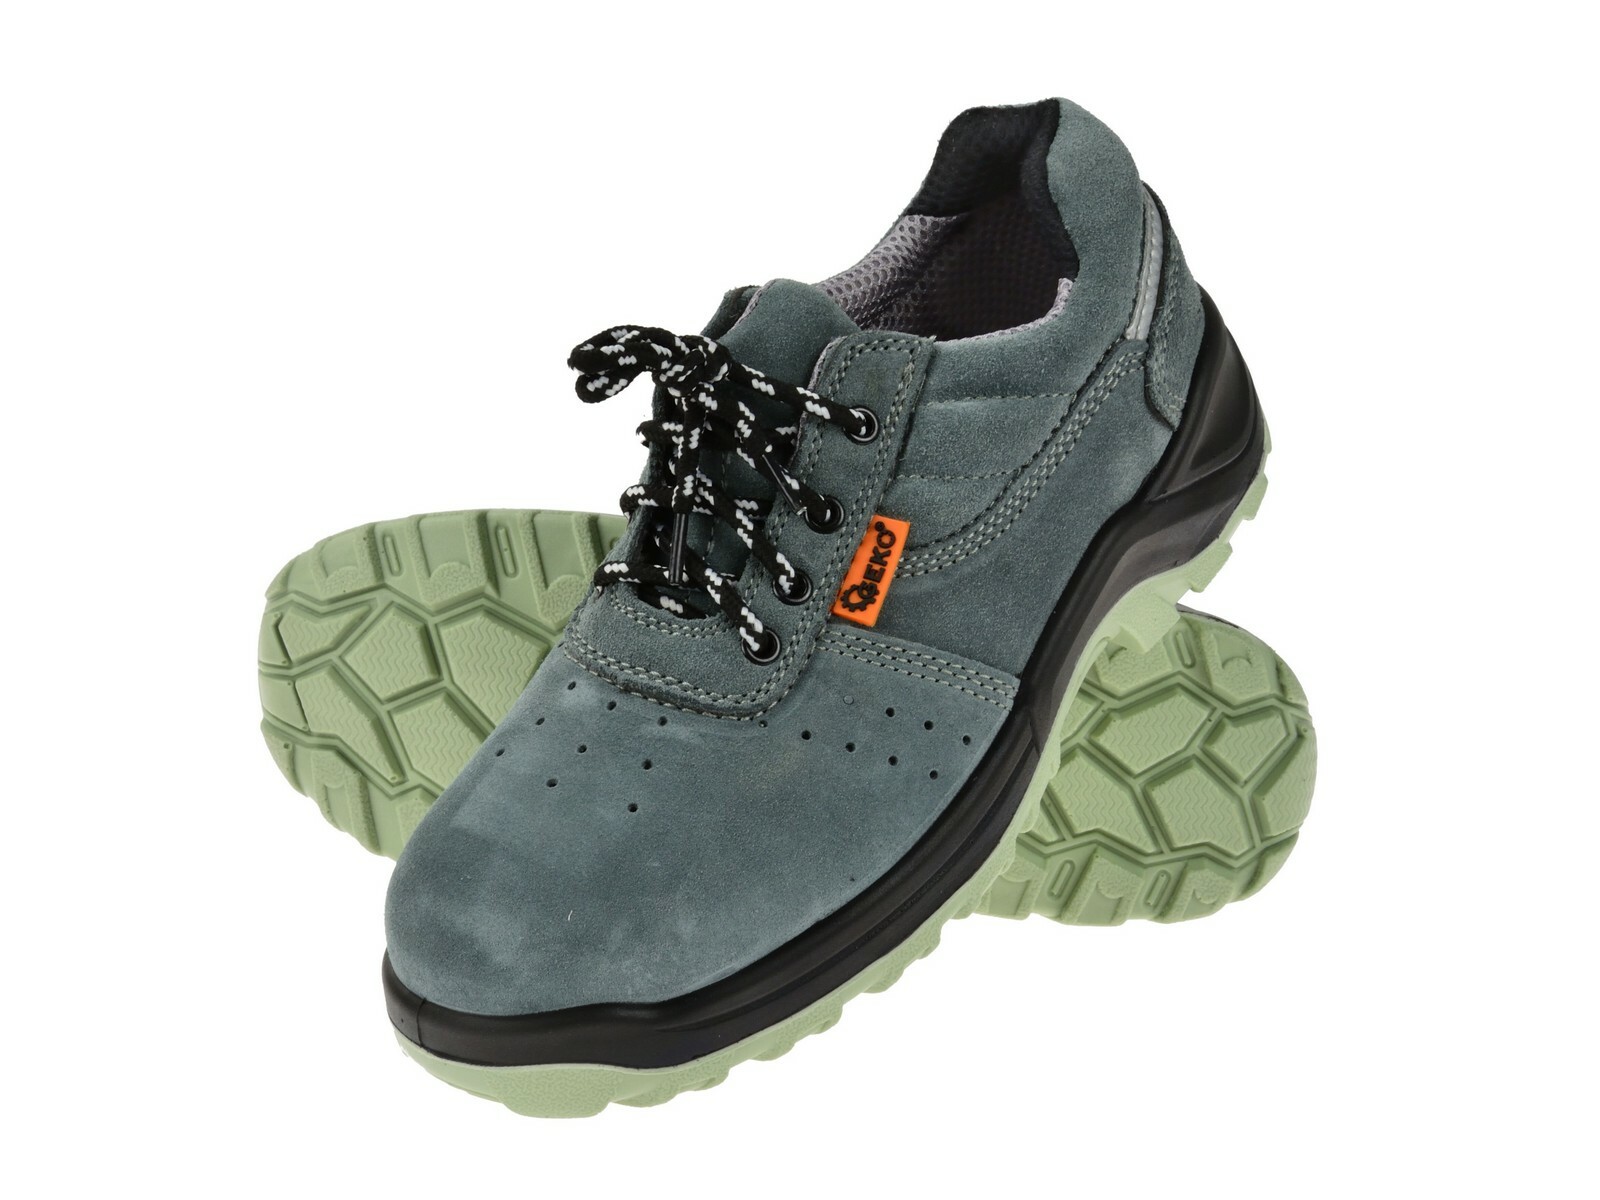 Ochranné pracovní boty semišové model č.4 vel.39 GEKO nářadí G90529 + Dárek, servis bez starostí v hodnotě 300Kč